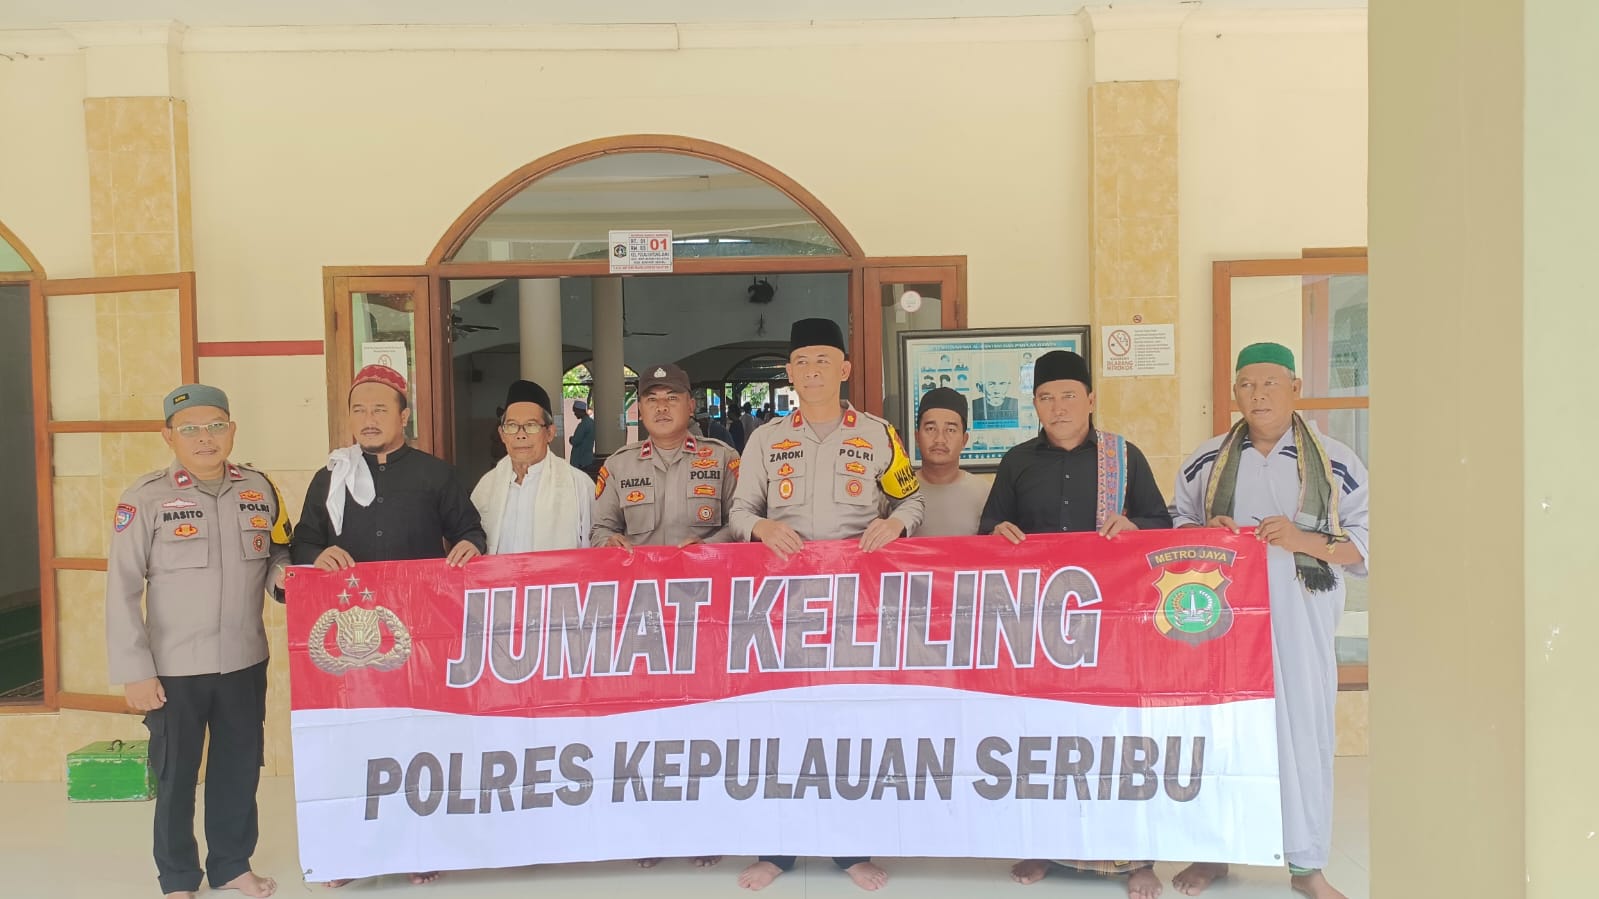 Wakapolres Kepulauan Seribu Ajak Warga Jaga Persatuan dalam Jum'at Keliling di Masjid Al-Ihsan Kel. Pulau Untung Jawa